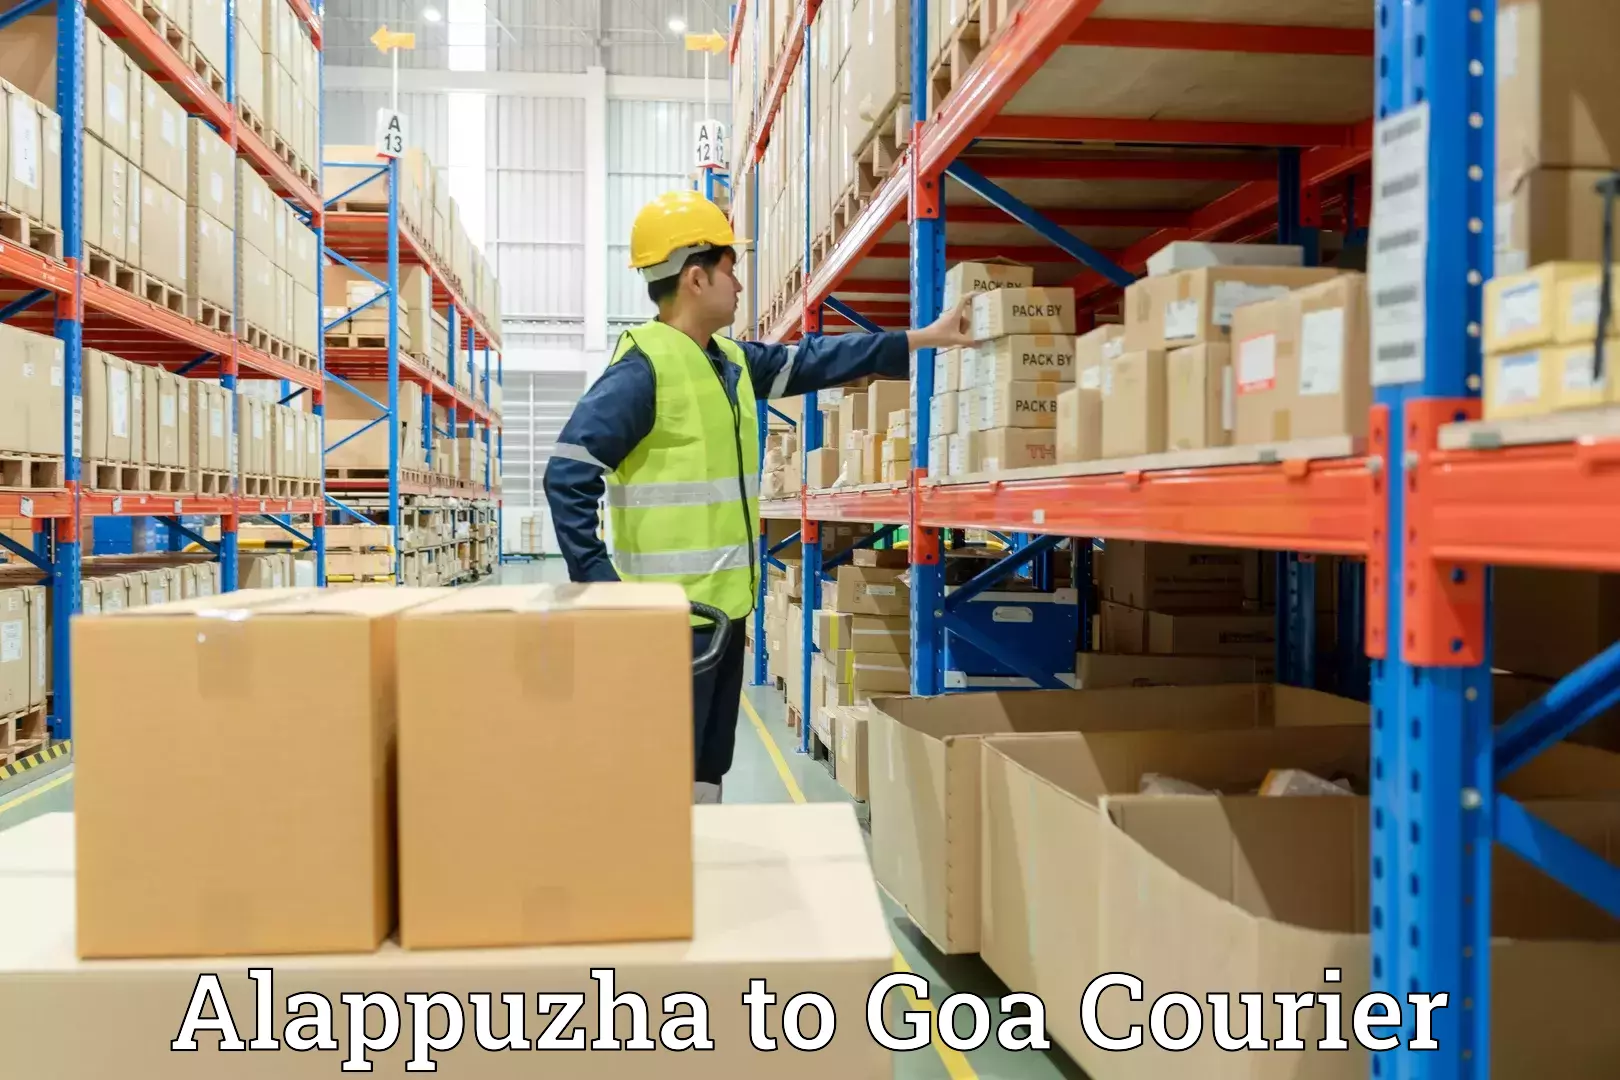 Skilled furniture transporters Alappuzha to Goa